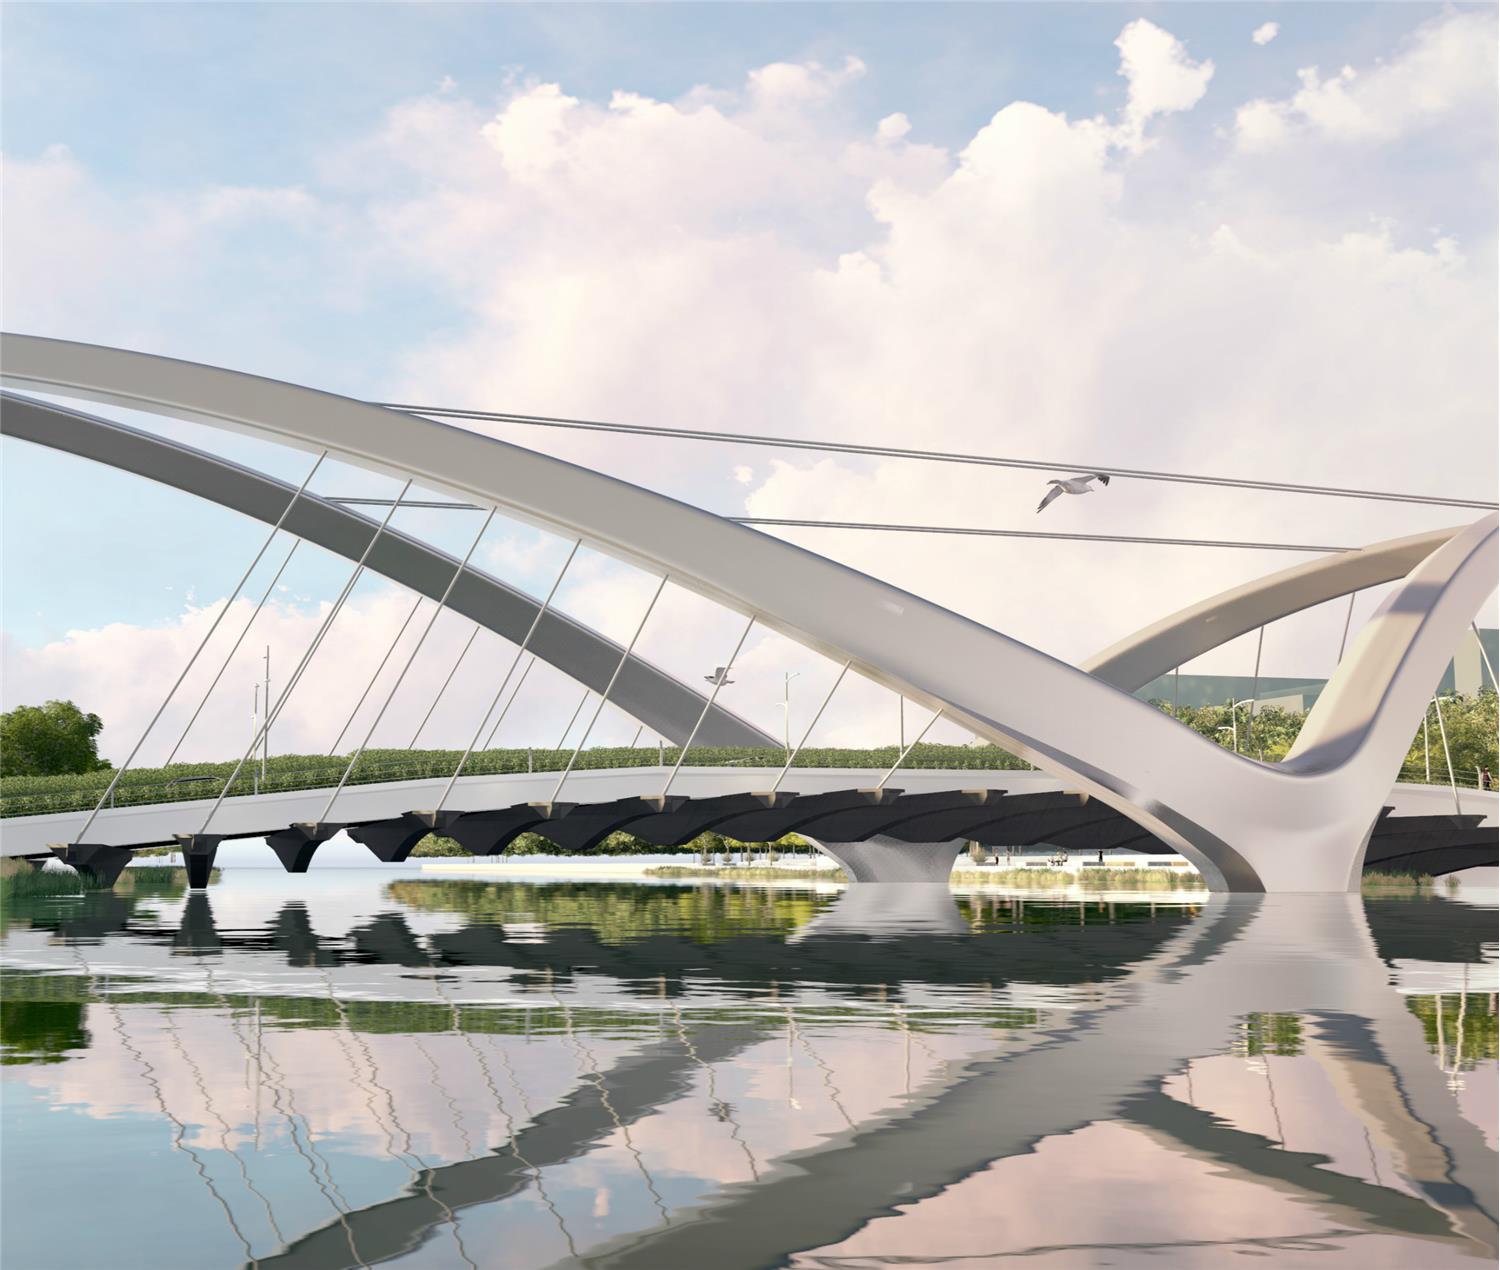 翠亨新区起步区马鞍岛环岛路桥梁投标项目